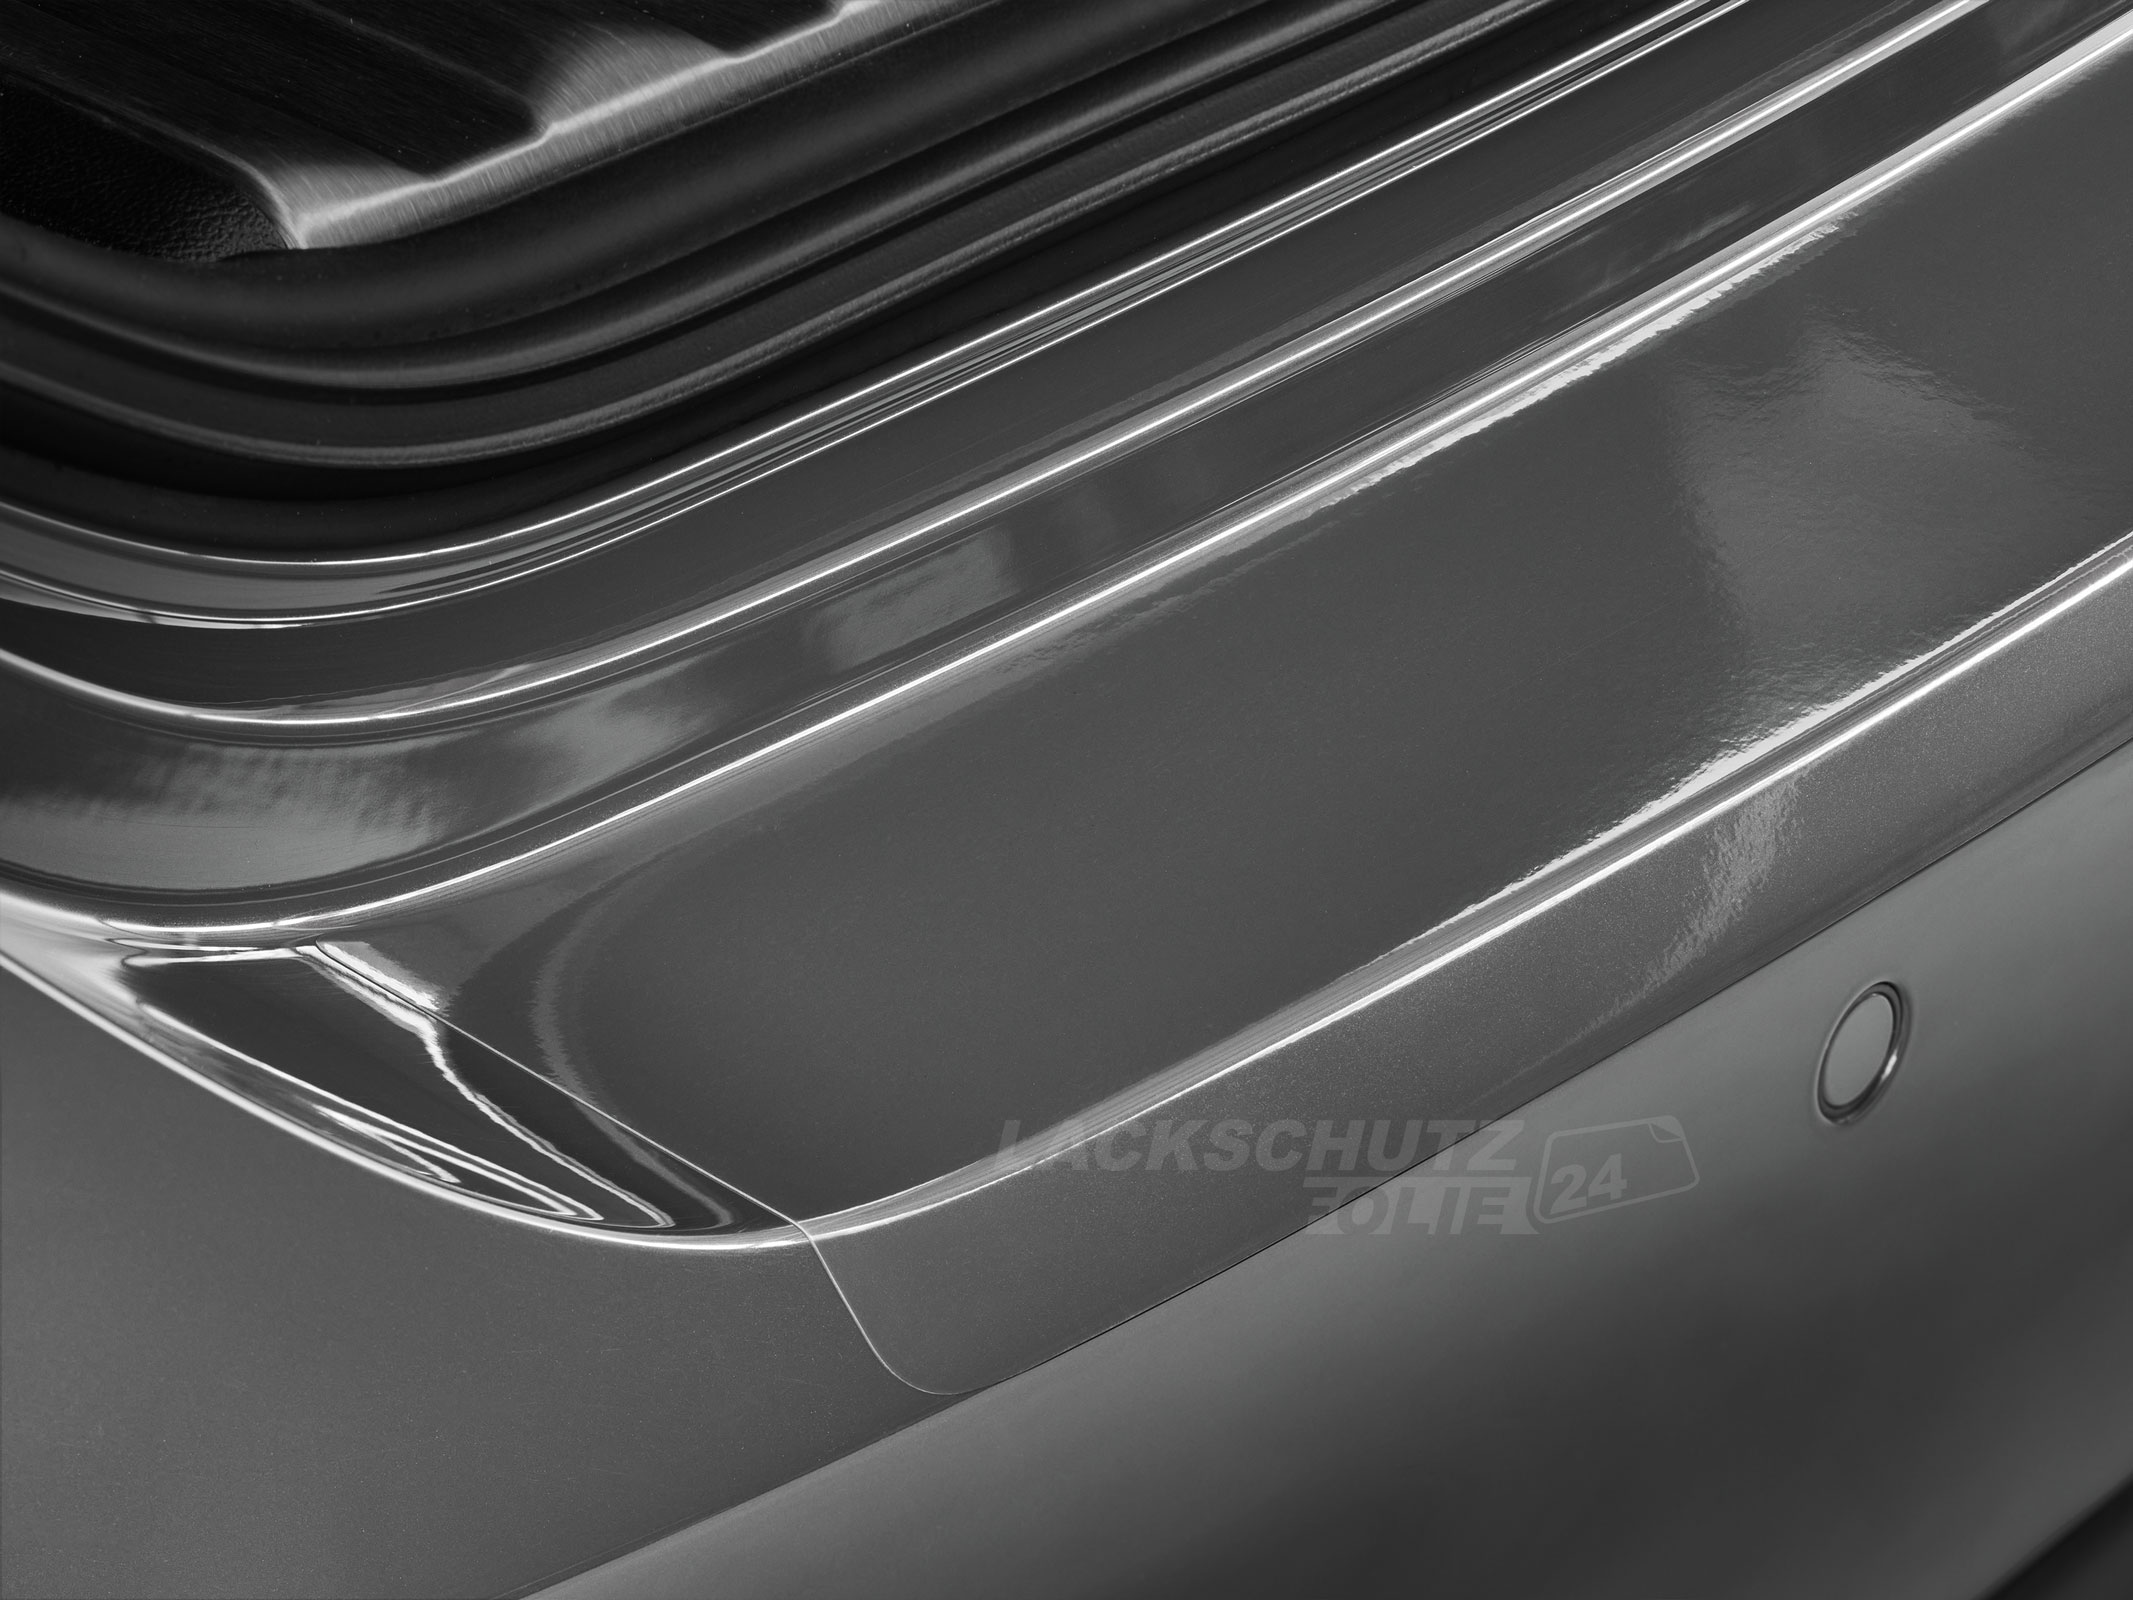 Ladekantenschutzfolie - Transparent Glatt Hochglänzend 240 µm stark für Mazda 3 Stufenheck Typ BL, BJ 2009-2013